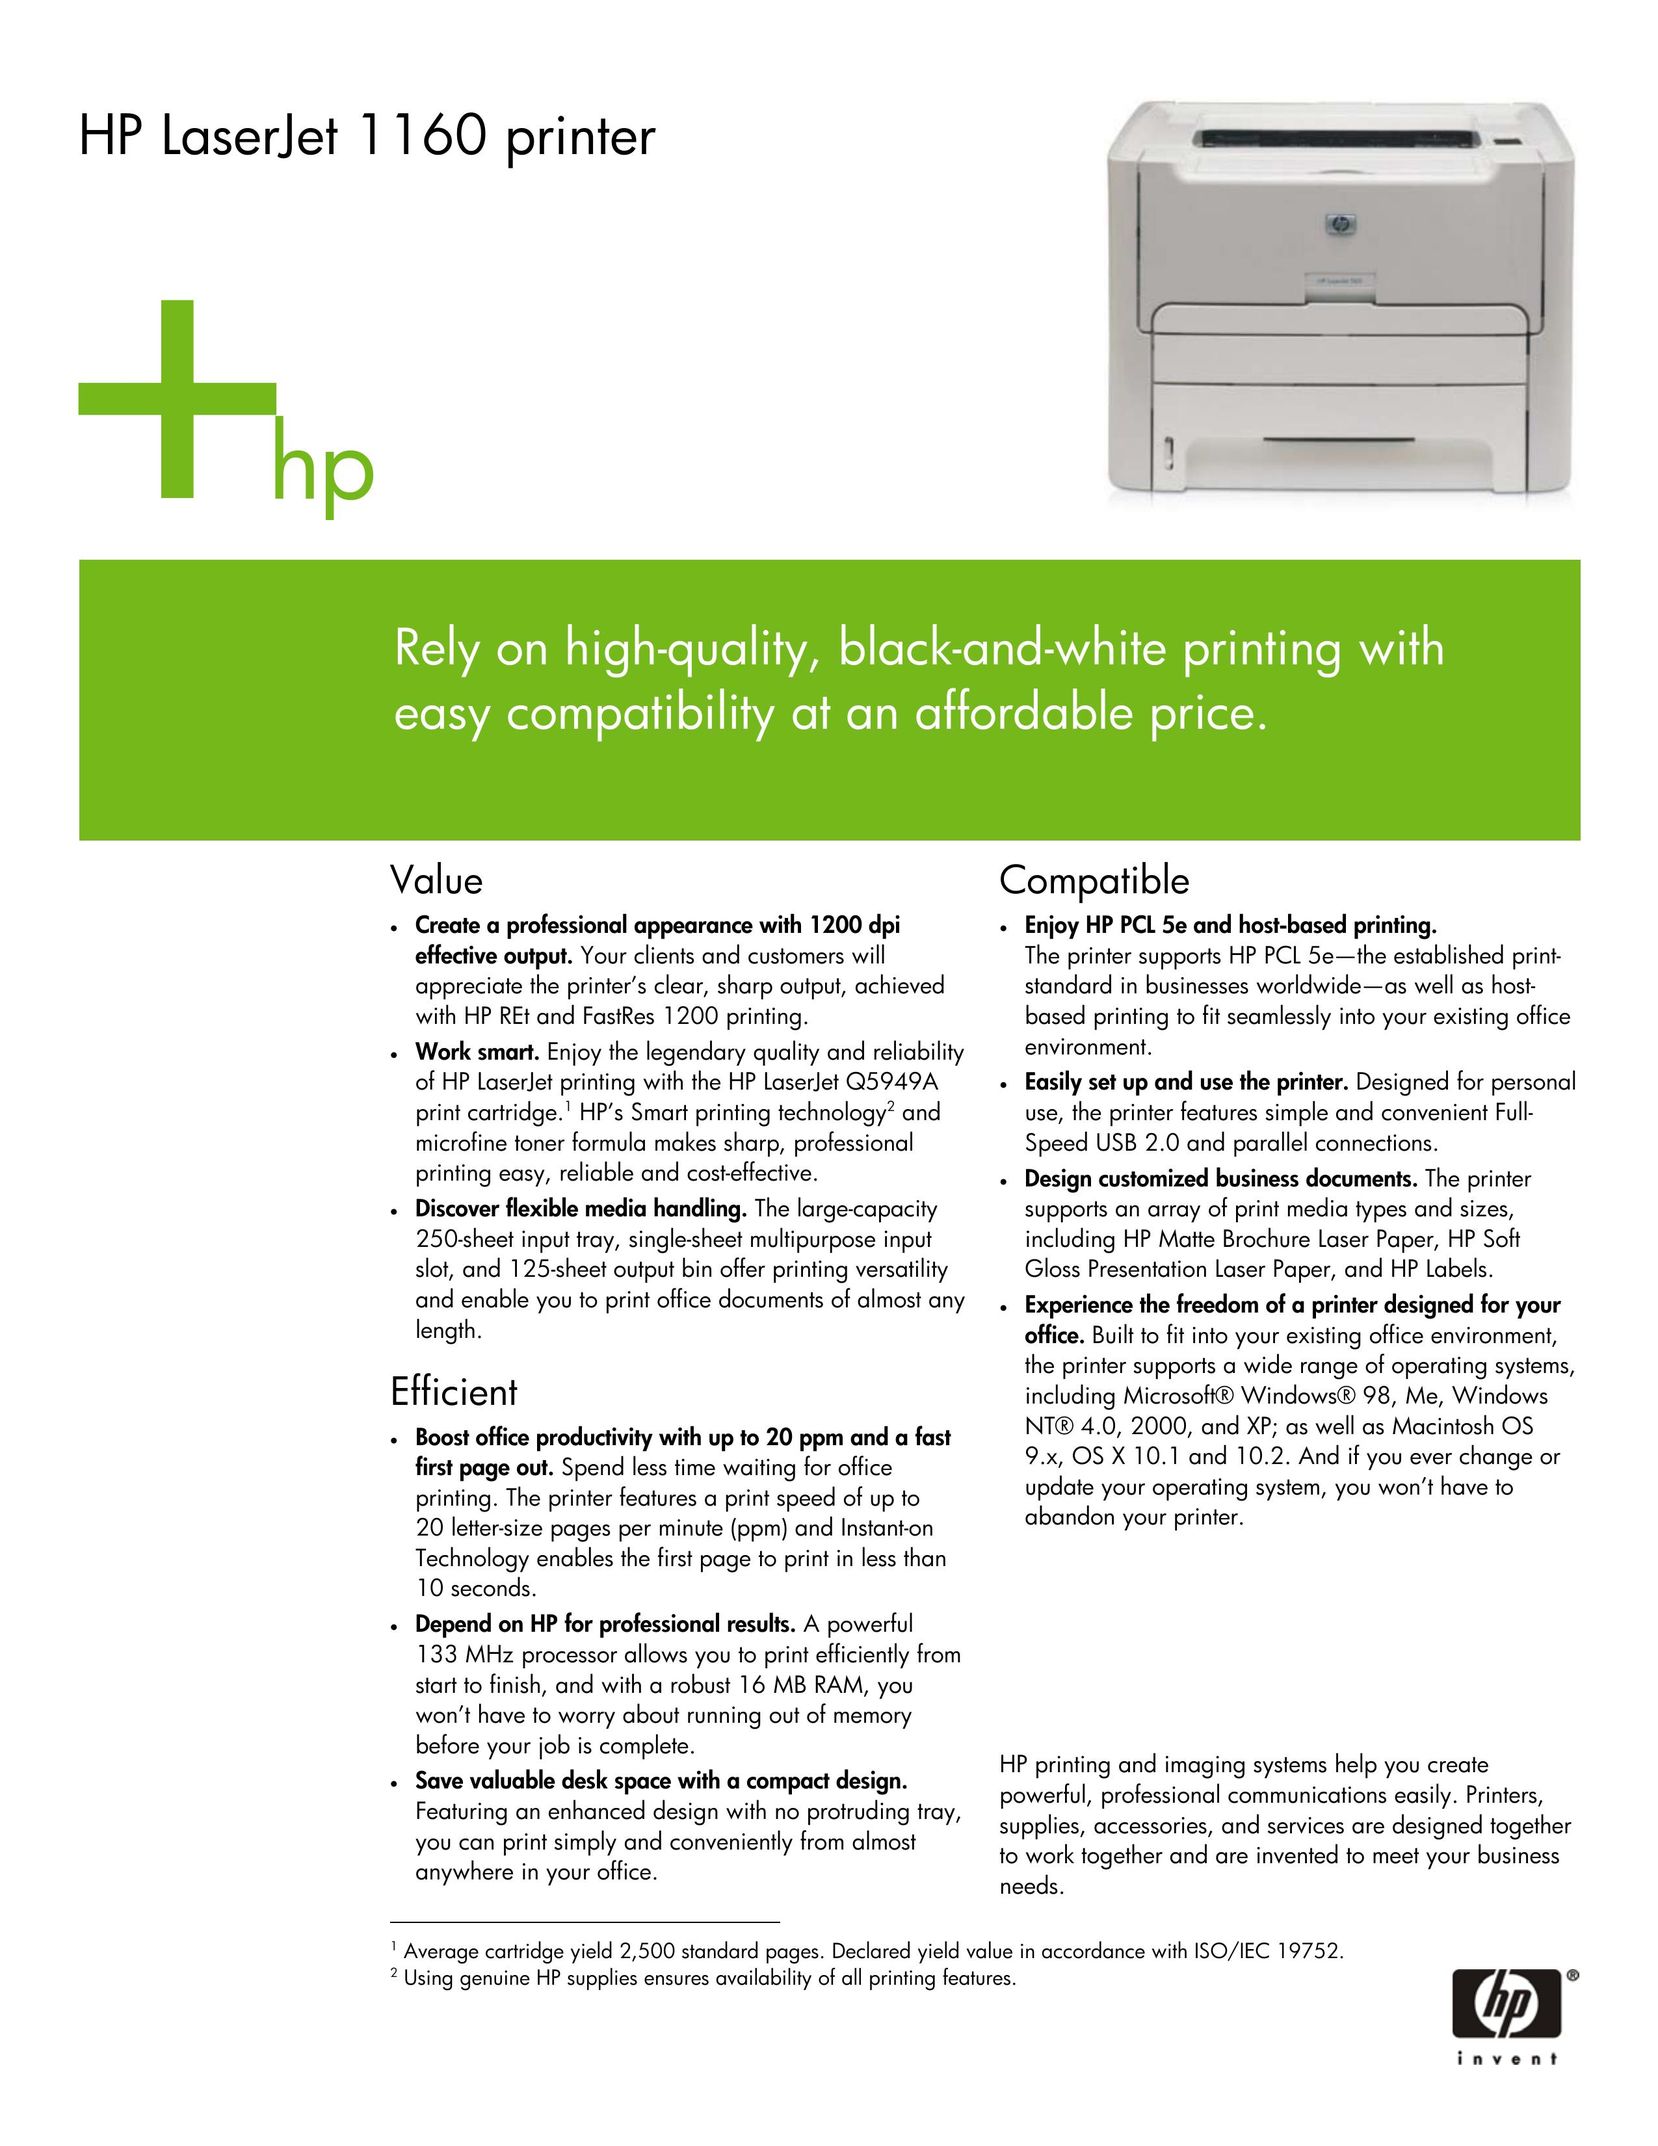 HP (Hewlett-Packard) 1160 Printer User Manual